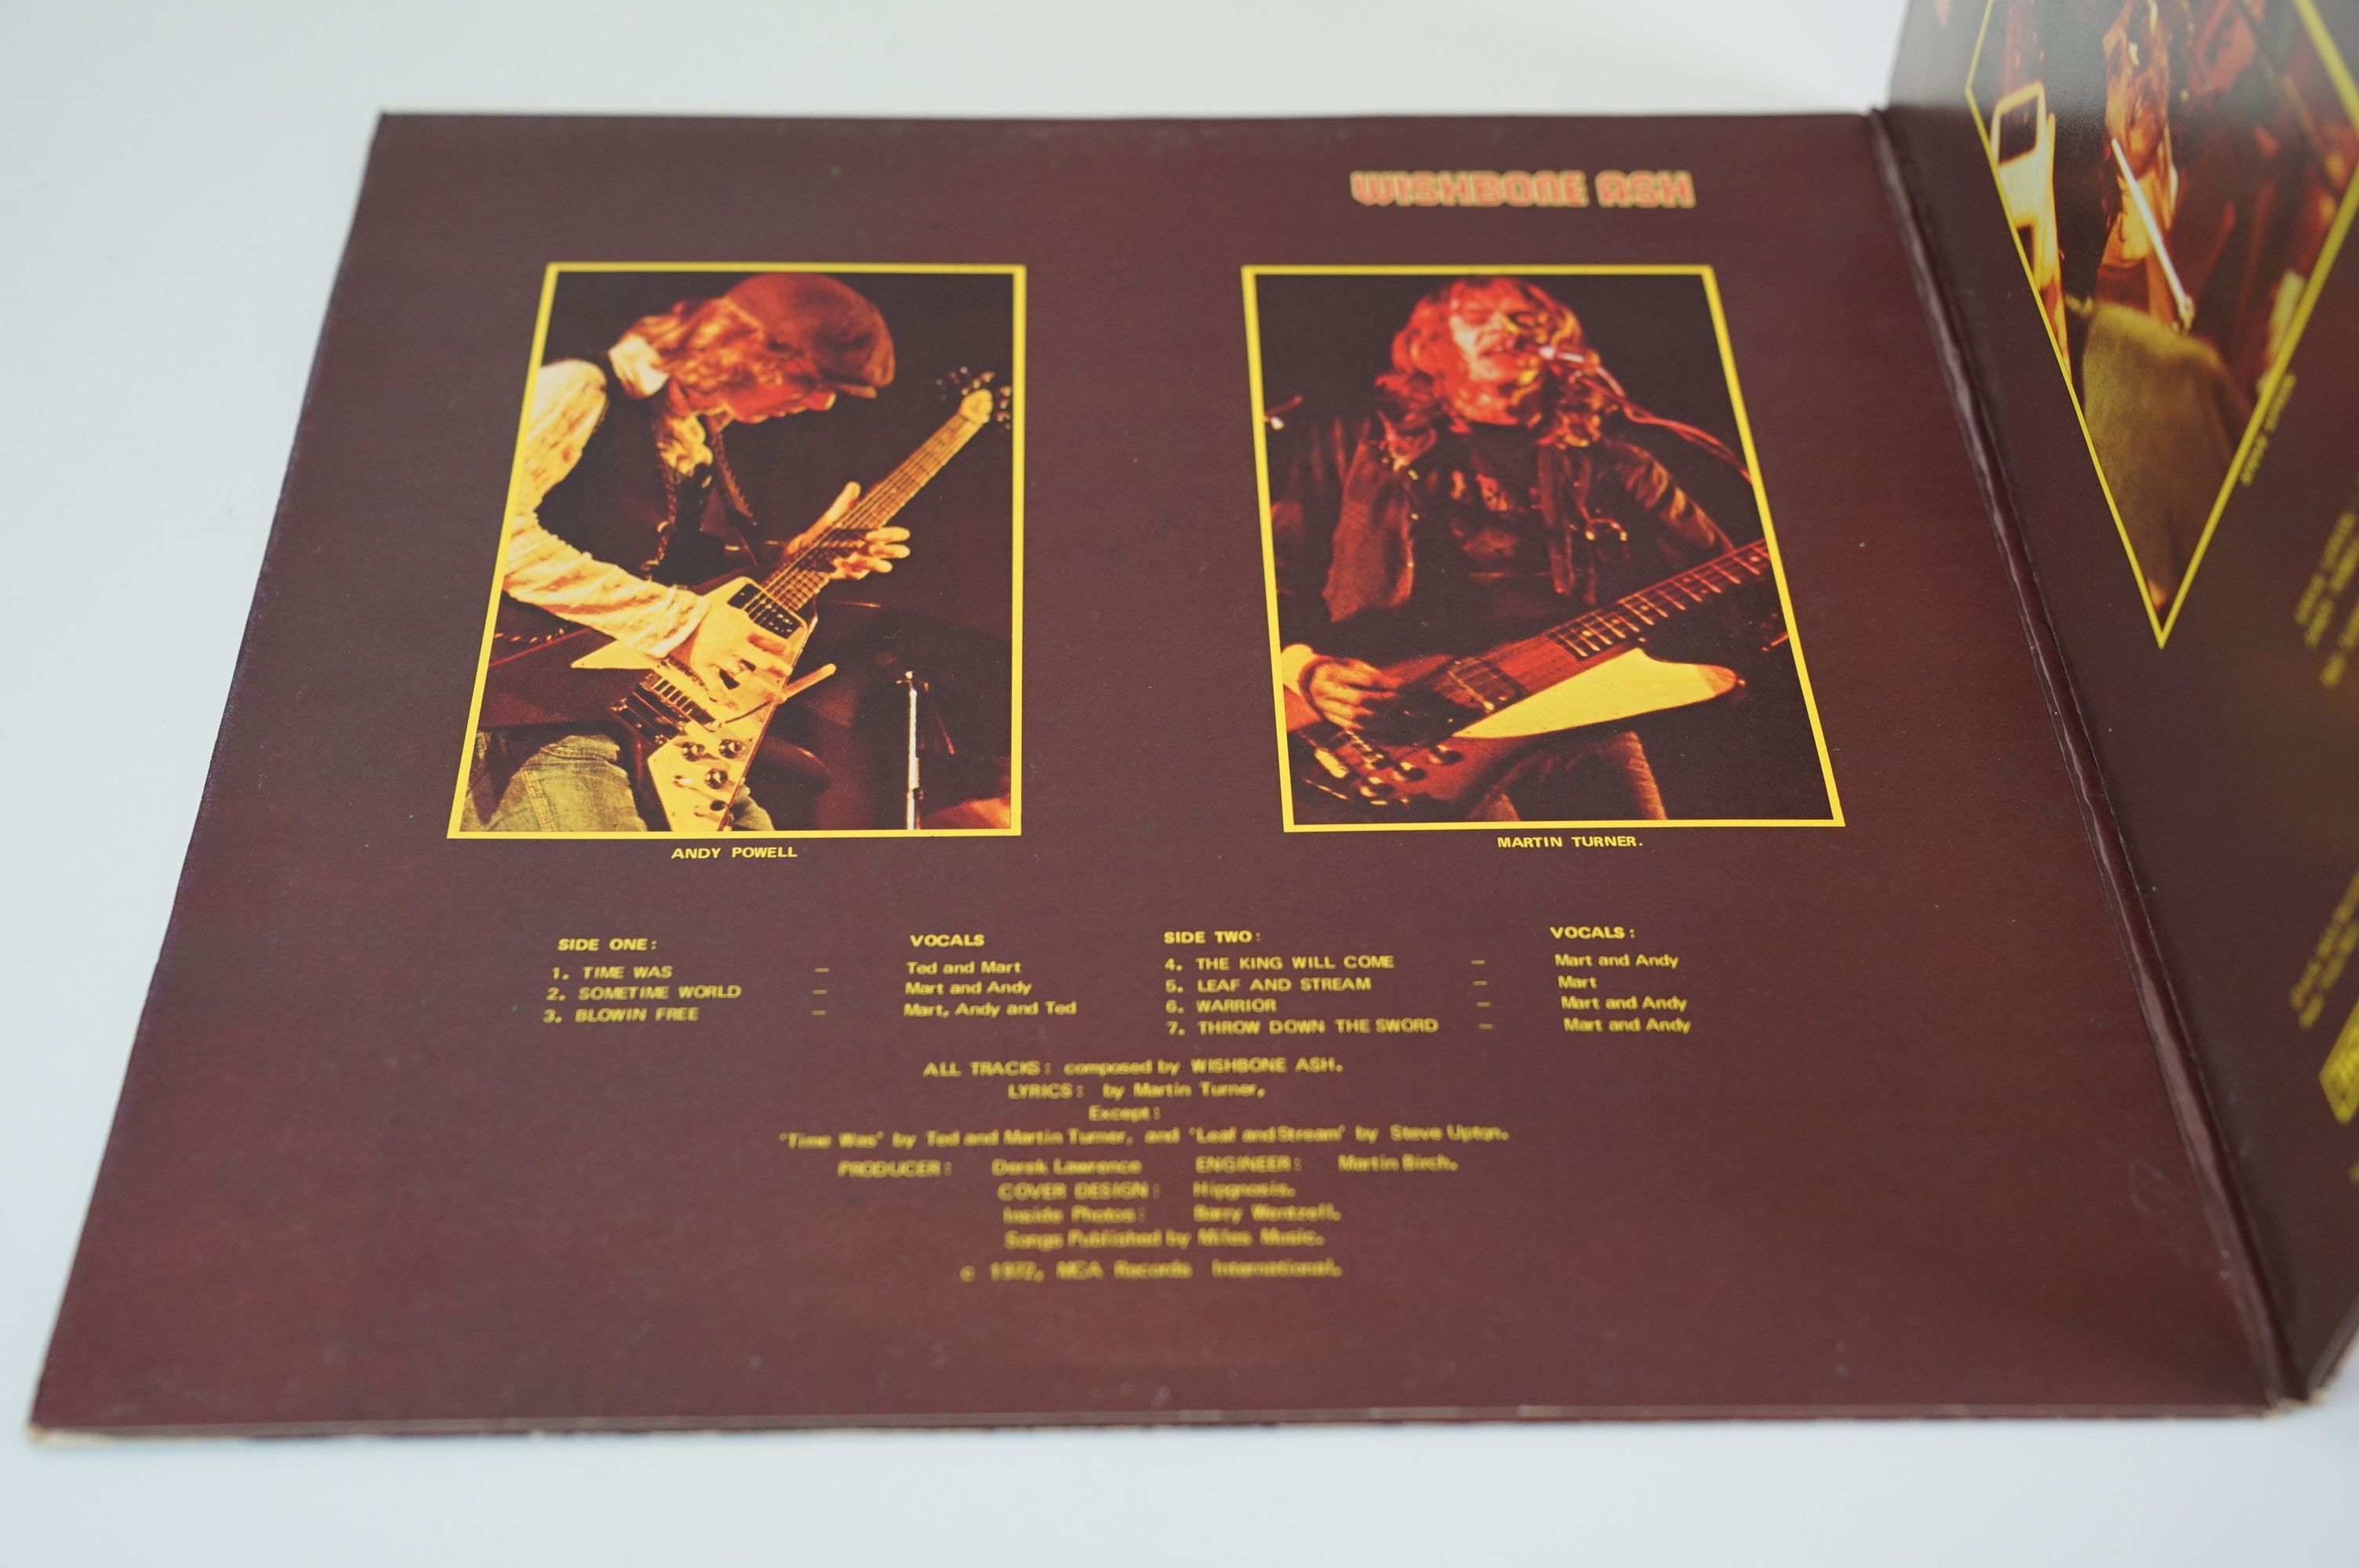 Vinyl - Wishbone Ash Argus on MCA MDKS 8006 vinyl & sleeves vg+ - Image 3 of 8